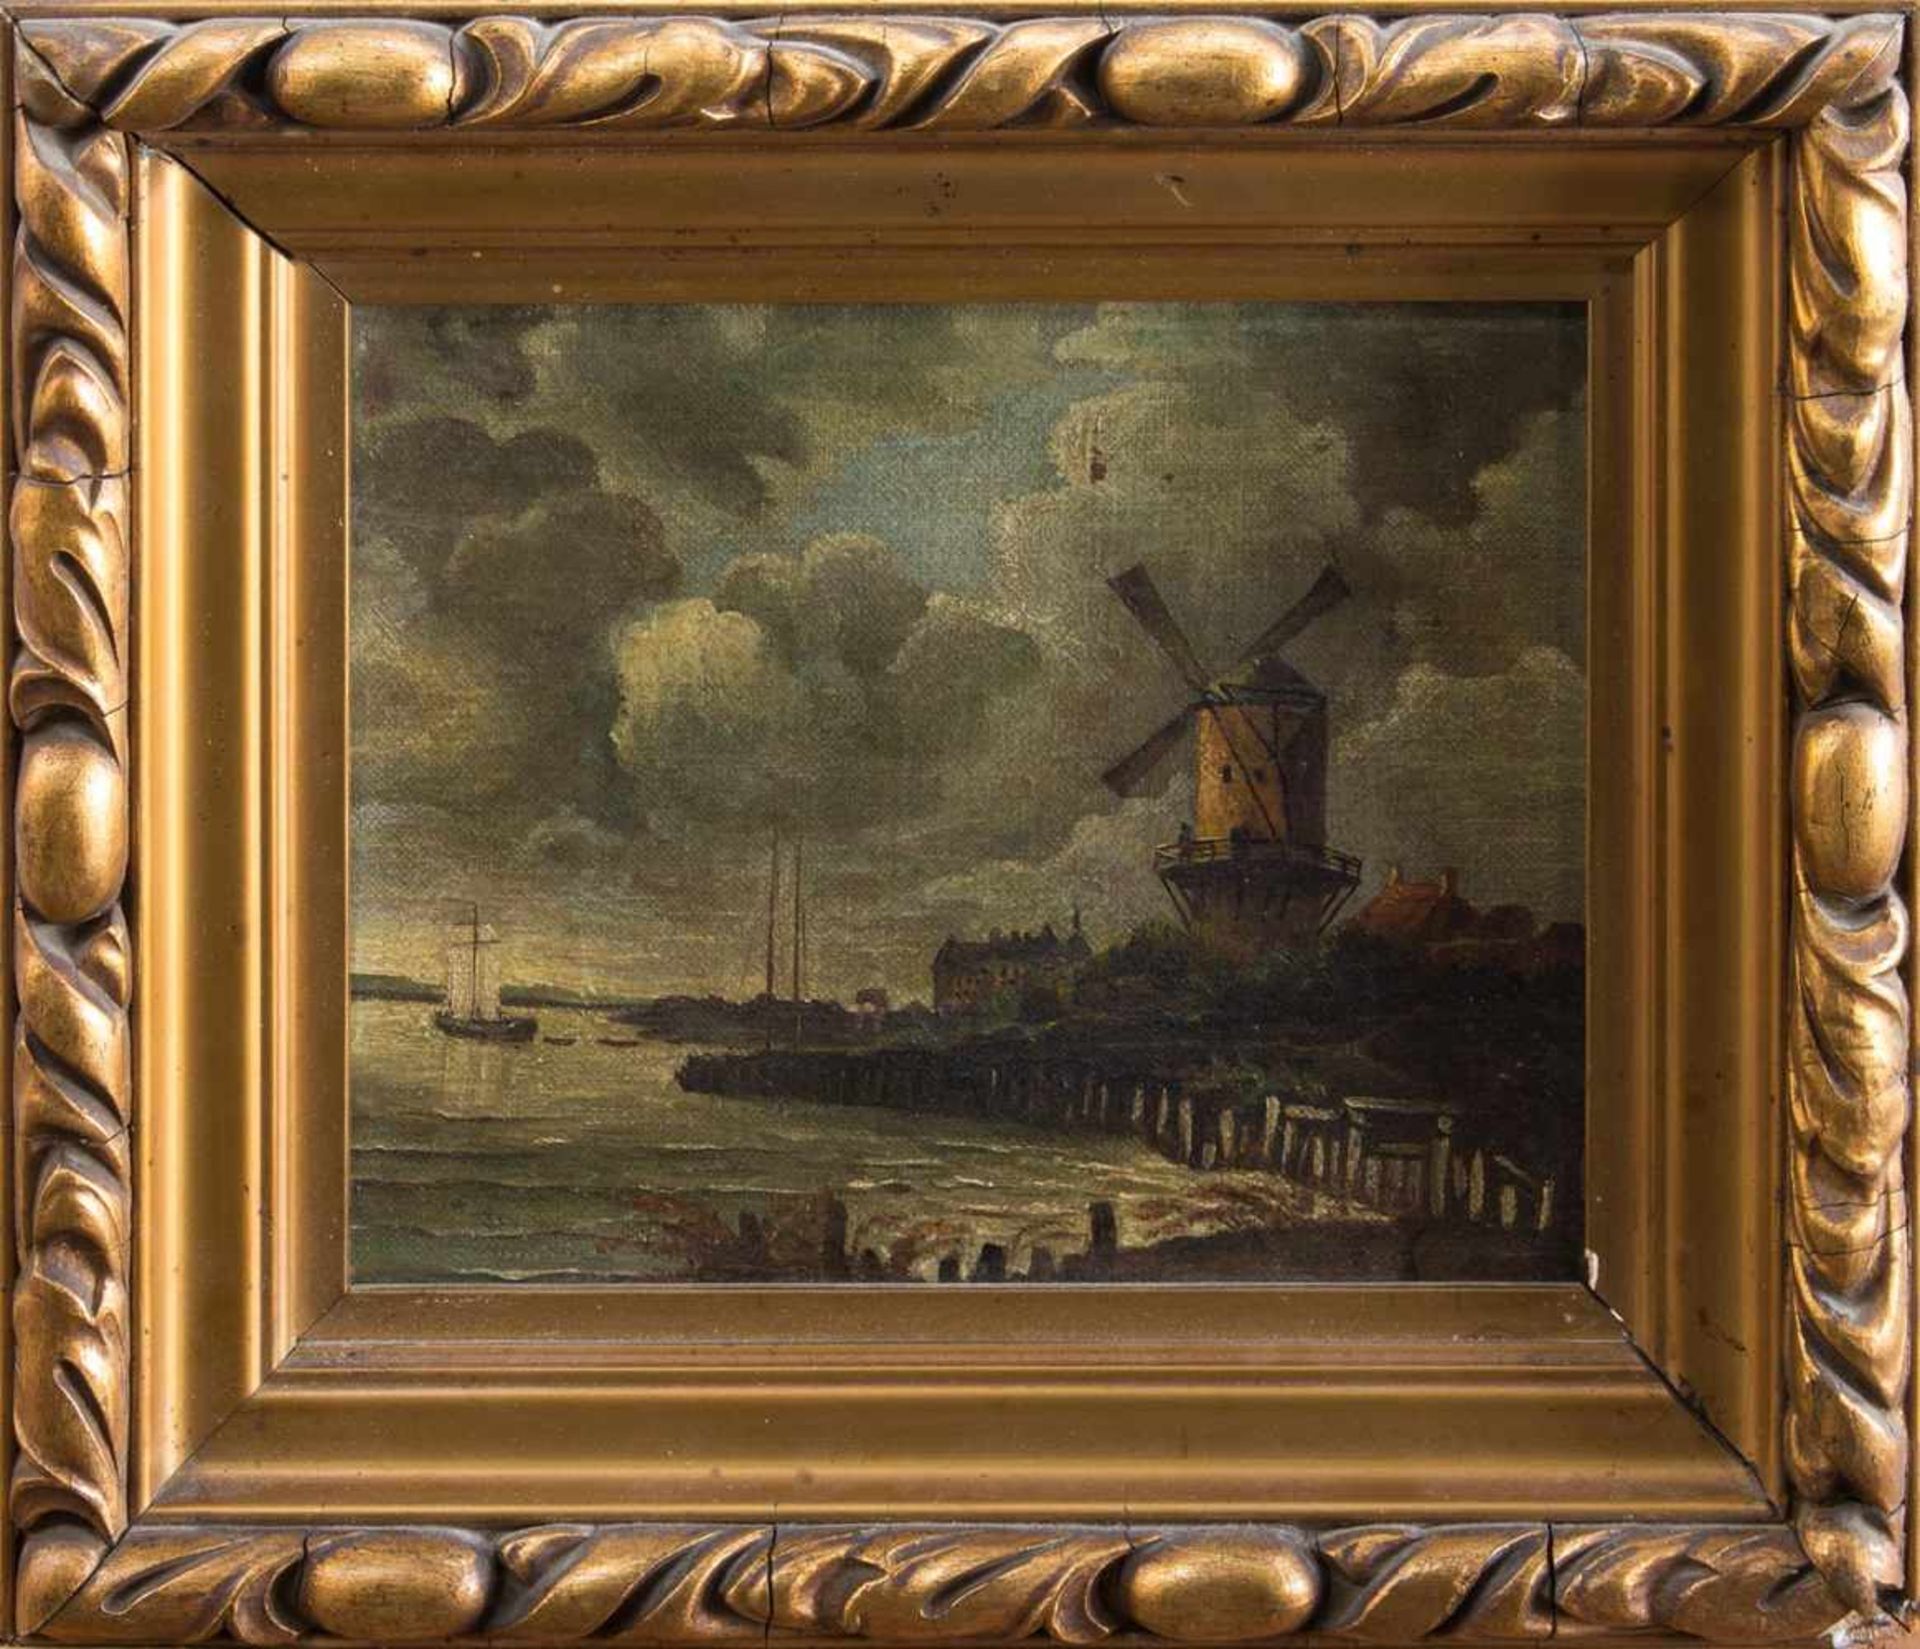 Unbekannt(Landschaftsmaler um 1900)Abendstimmung am MeerÖl/ Leinwand, 17 x 21 cm, gerahmt,